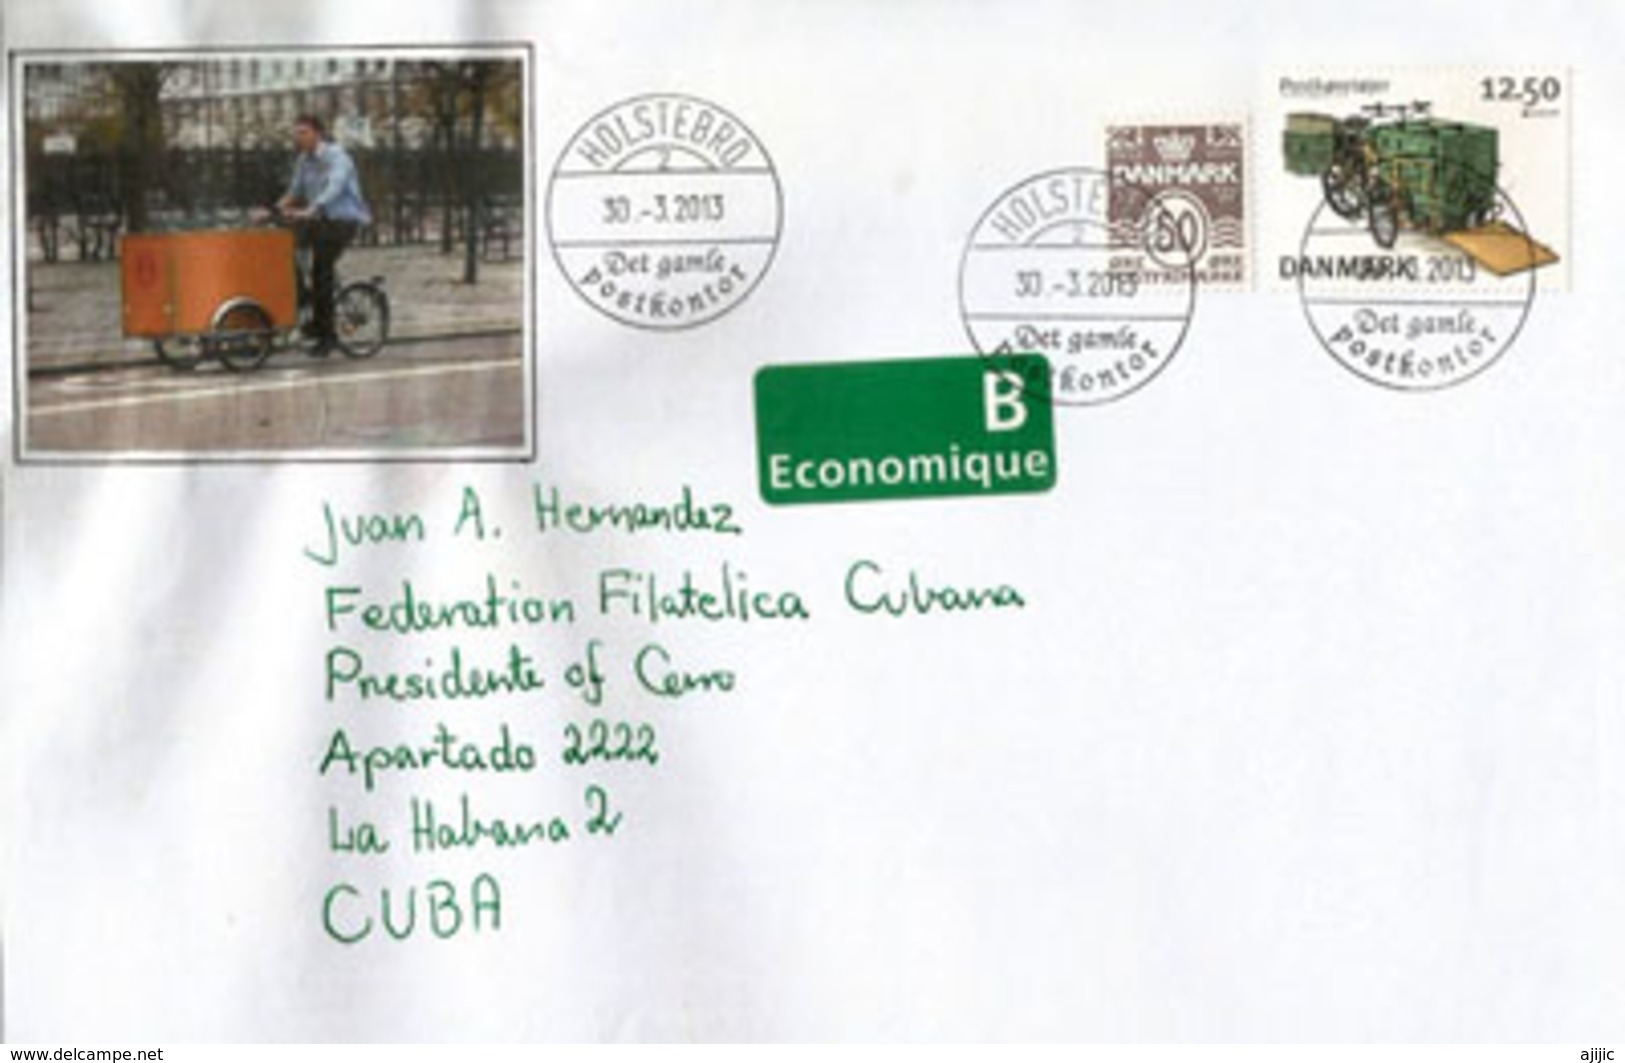 Triporteur De La Poste Danoise, Lettre Du Danemark Adressée à CUBA - Briefe U. Dokumente